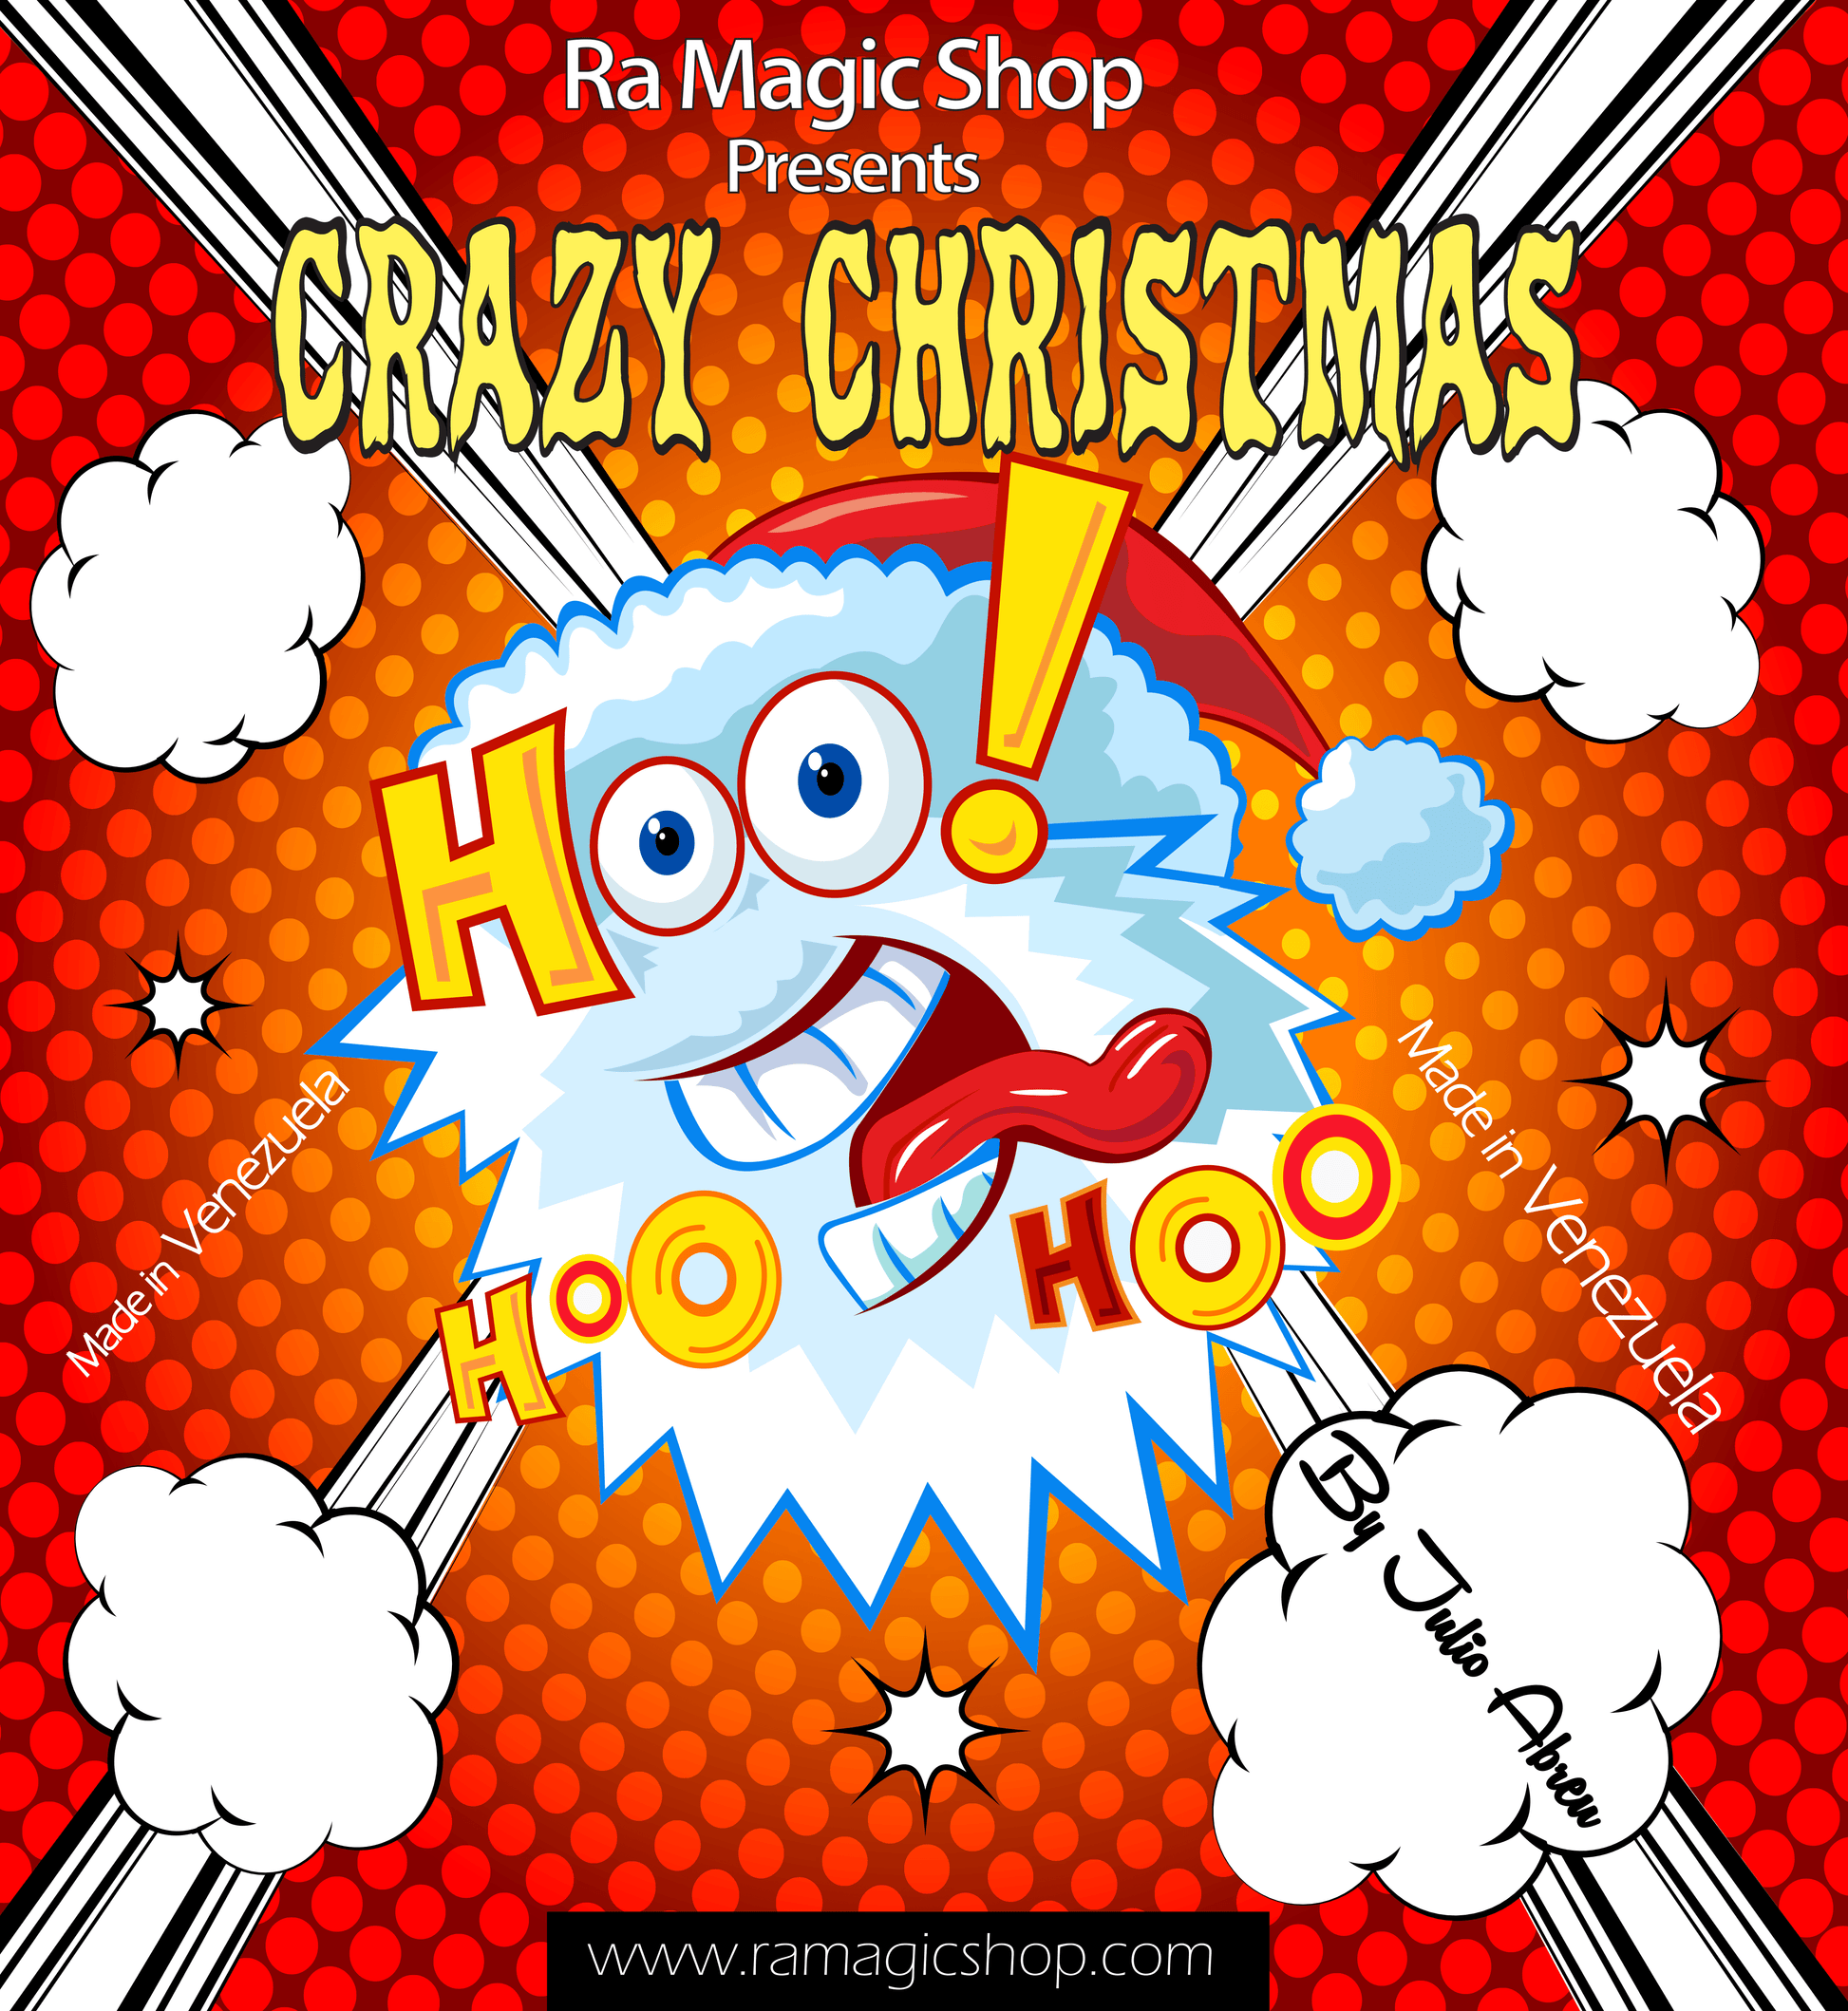 Crazy Christmas by Ra Magic Shop and Julio Abreu - Ra Magic Shop - #magic_trick#